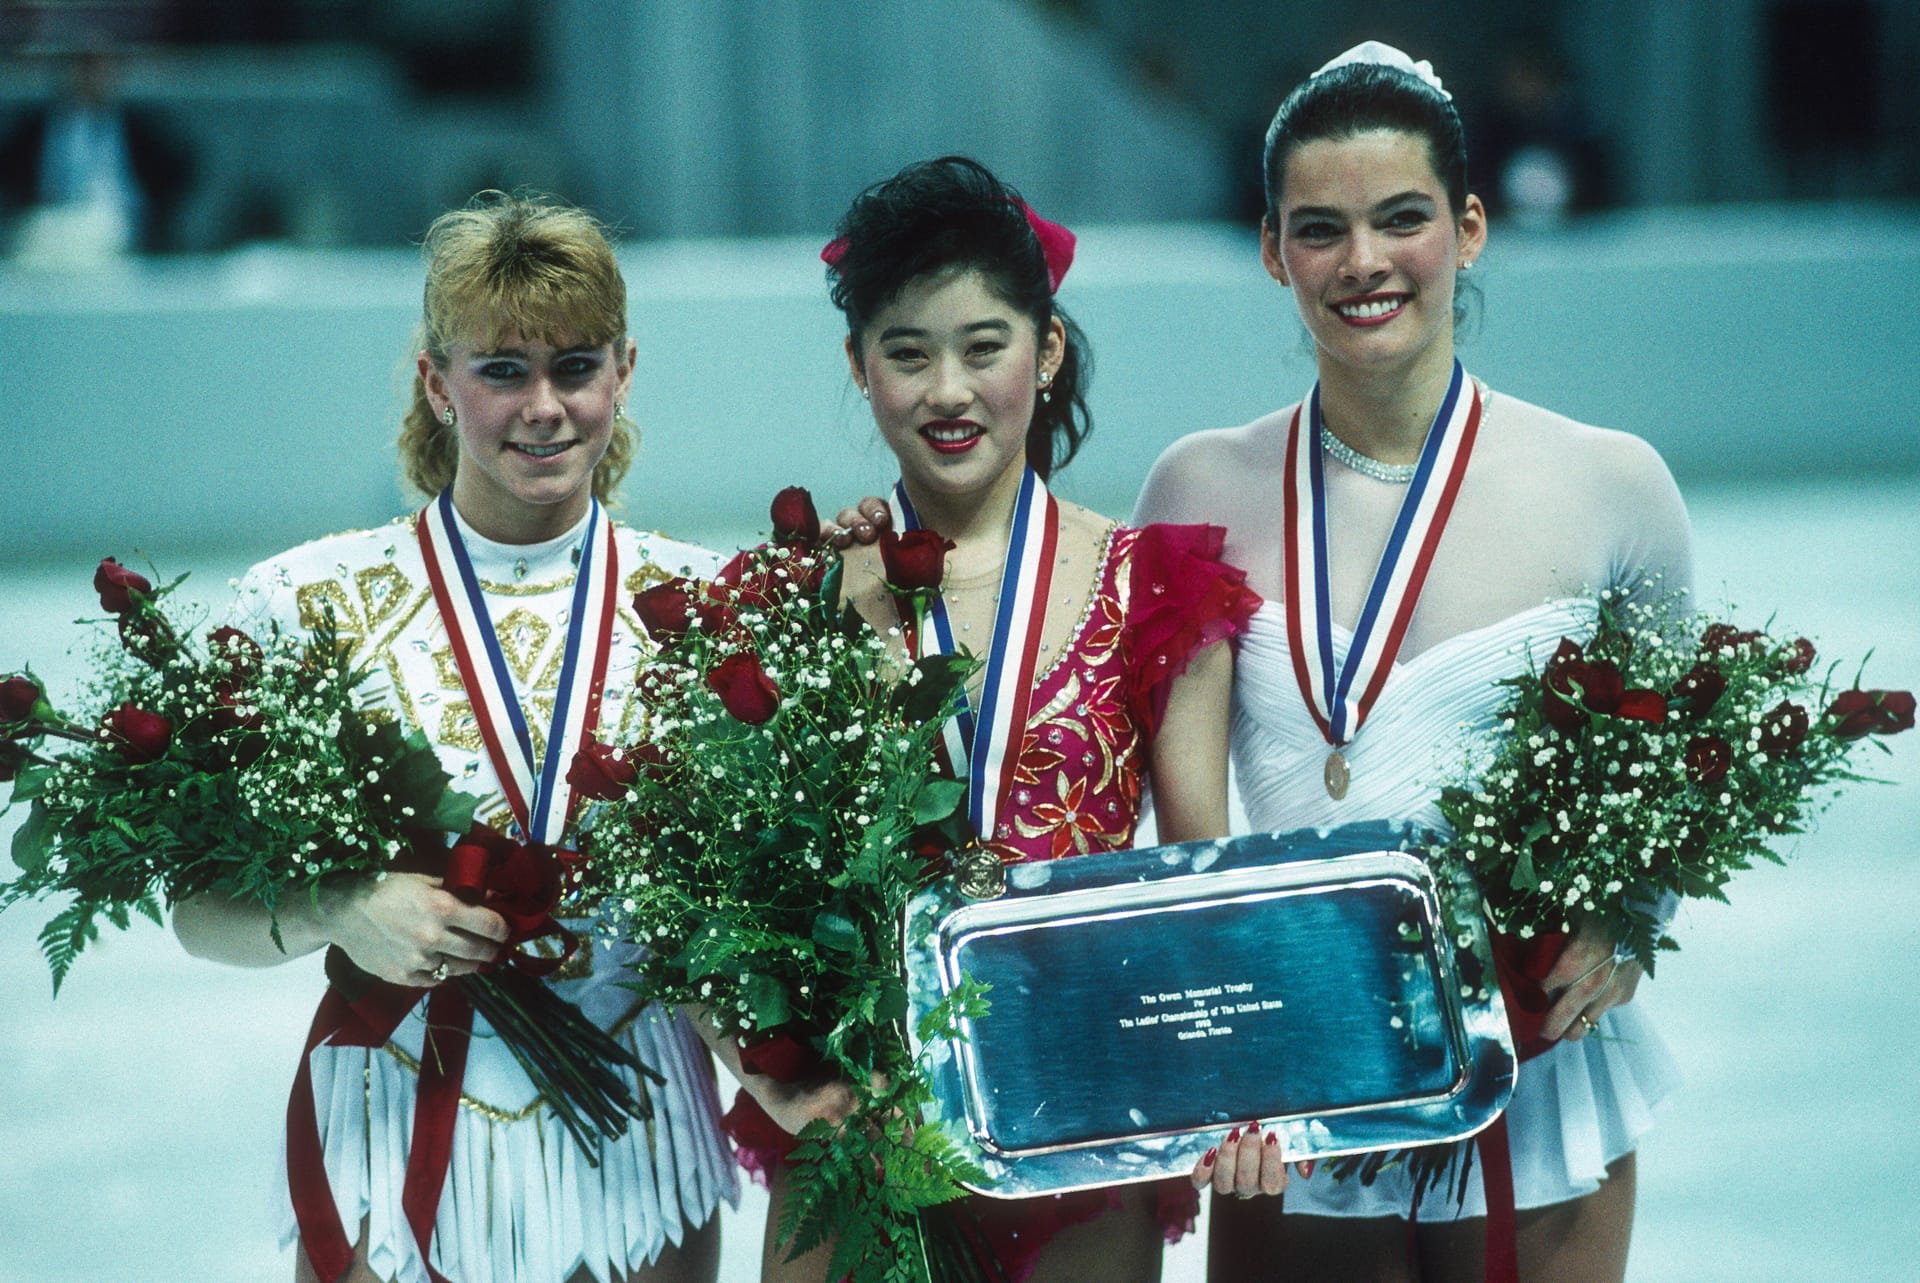 Tonya Harding, Kristi Yamaguchi, Nancy Kerrigan (v. l. n. r.): Harding und Kerrigan standen immer in Konkurrenz.